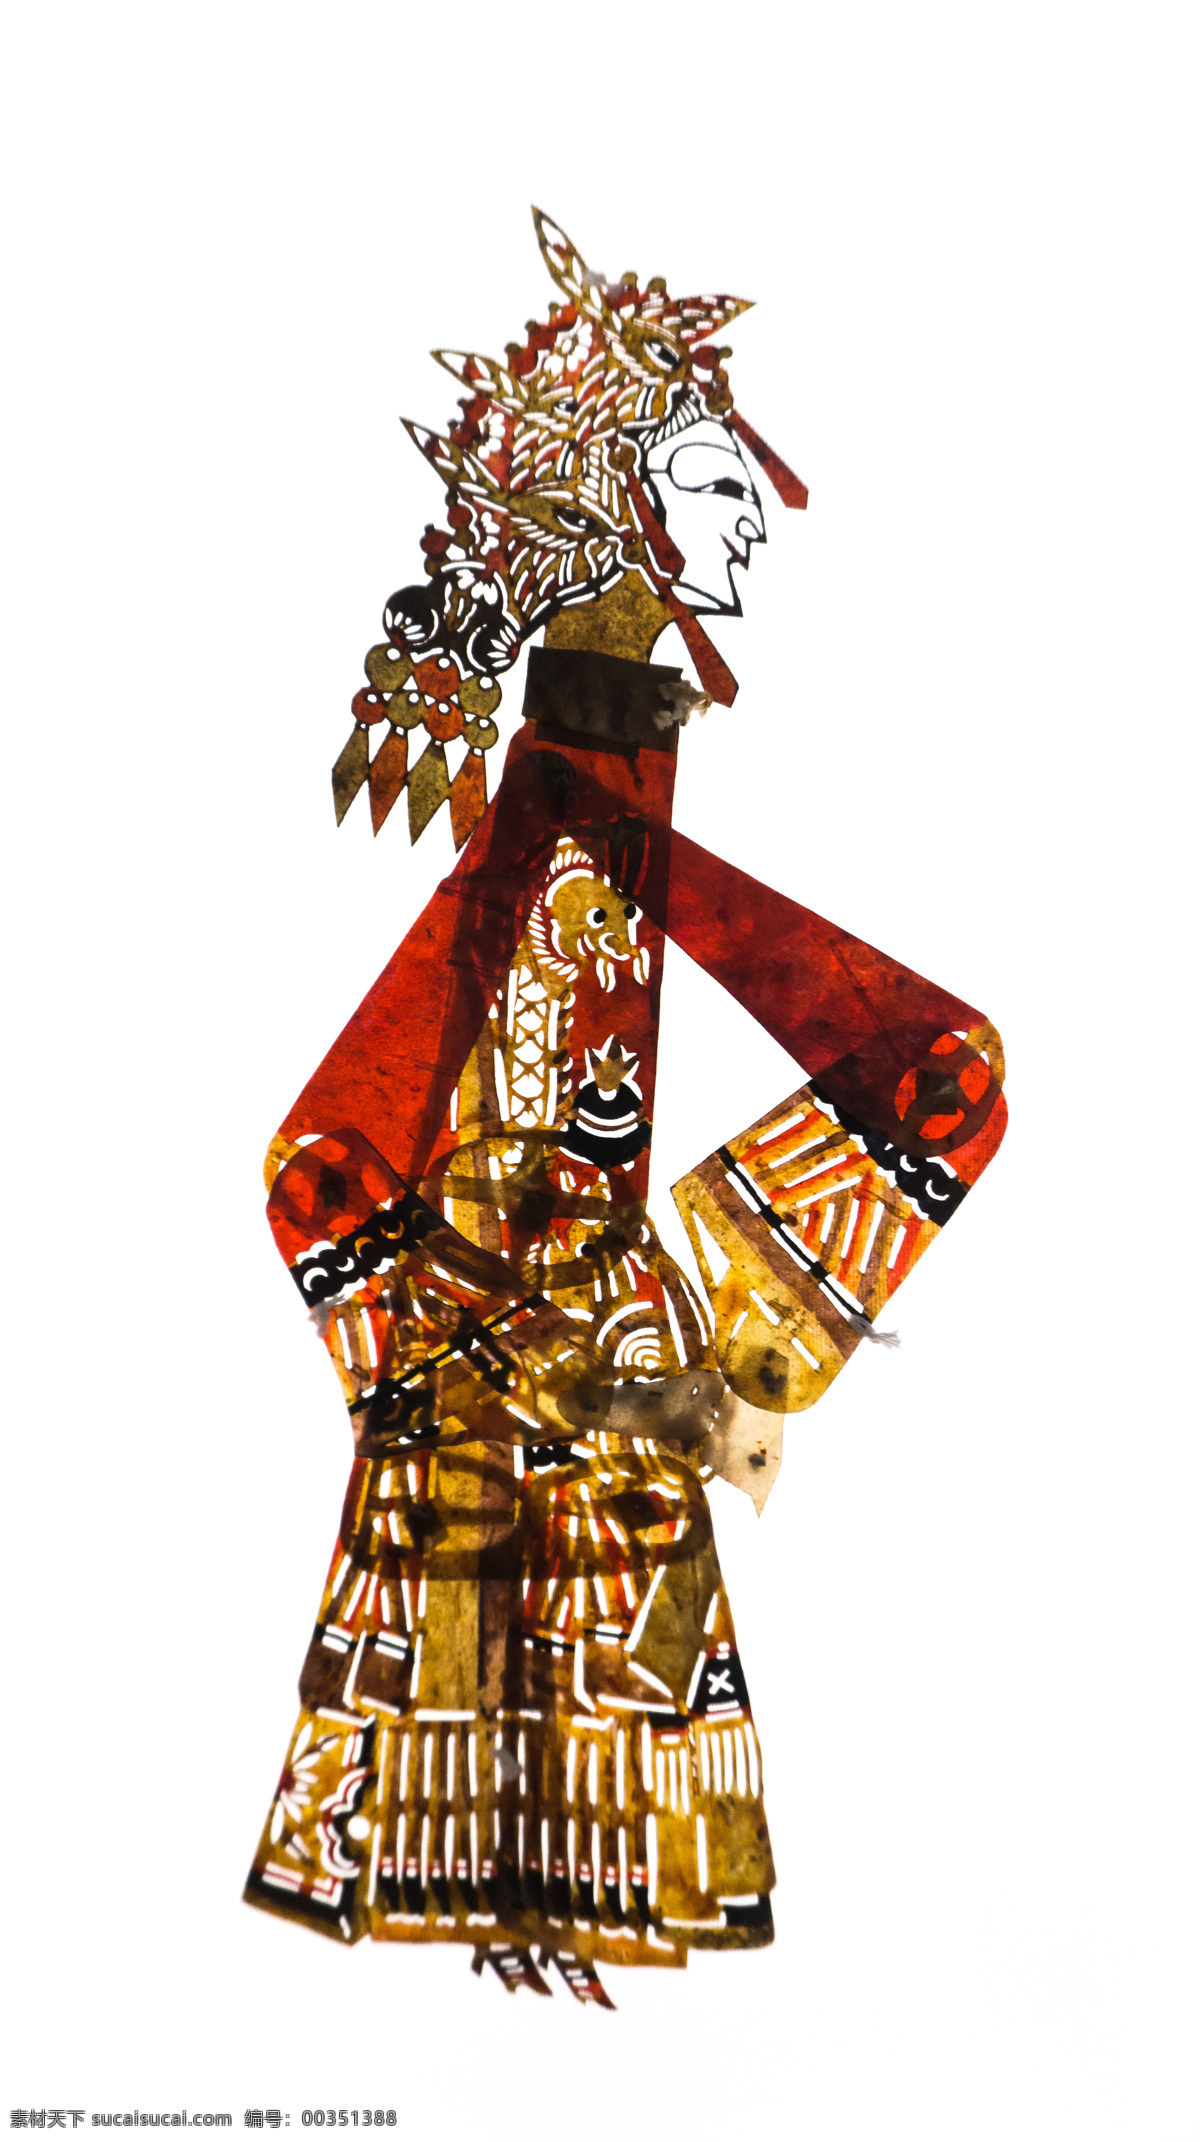 皮影戏 古装 皮影 传统 文化 文化遗产 民族 戏曲 中国风 国粹 影子戏 驴皮影 戏剧艺术 文化艺术 传统文化